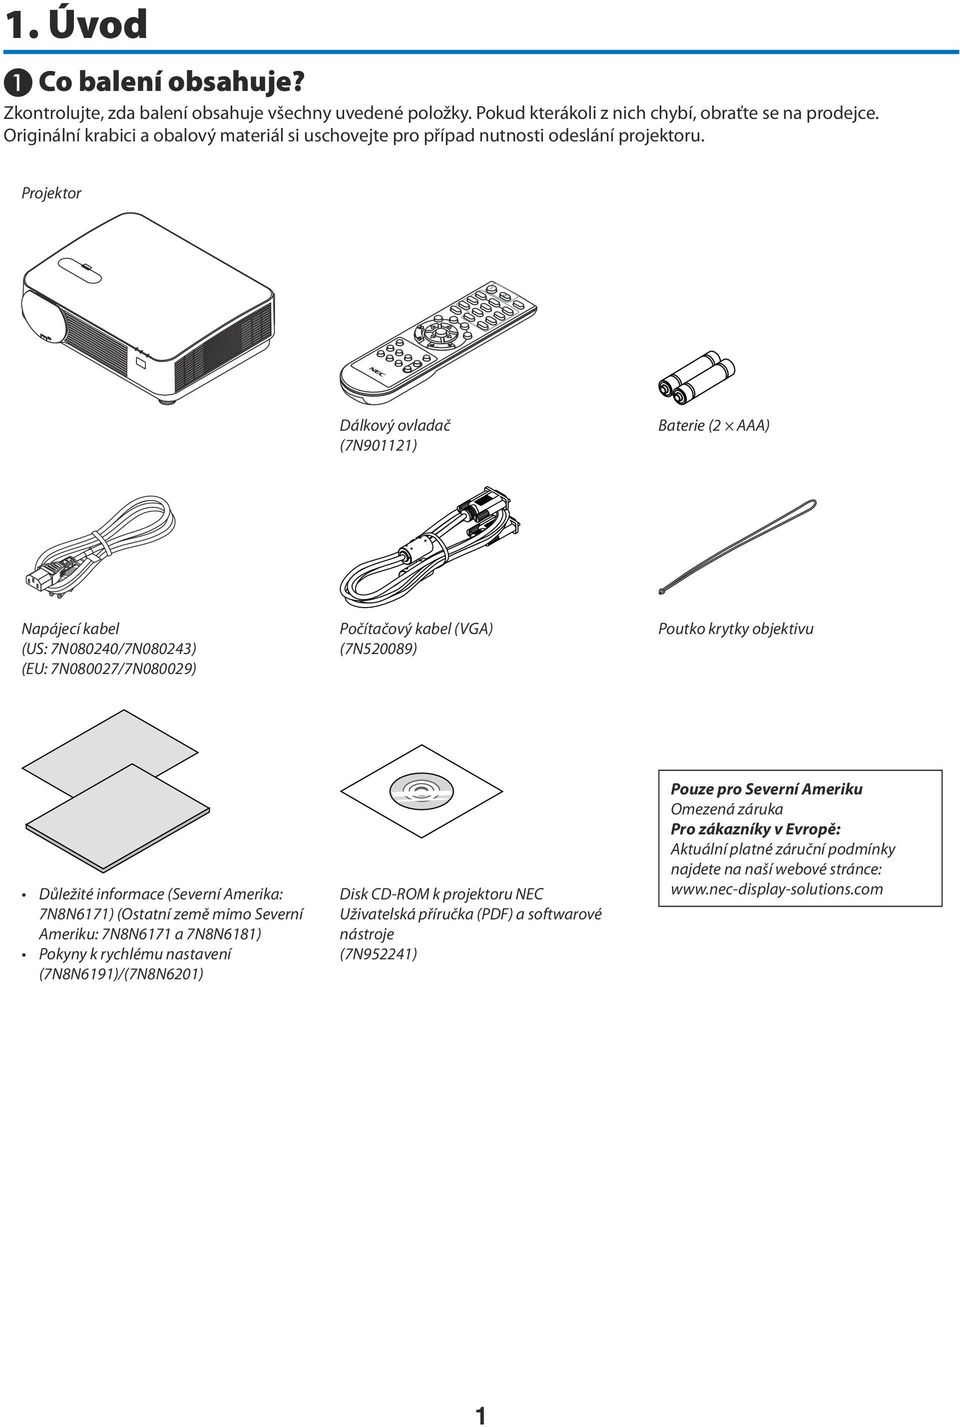 Projektor Dálkový ovladač (7N901121) Baterie (2 AAA) Napájecí kabel (US: 7N080240/7N080243) (EU: 7N080027/7N080029) Počítačový kabel (VGA) (7N520089) Poutko krytky objektivu Důležité informace